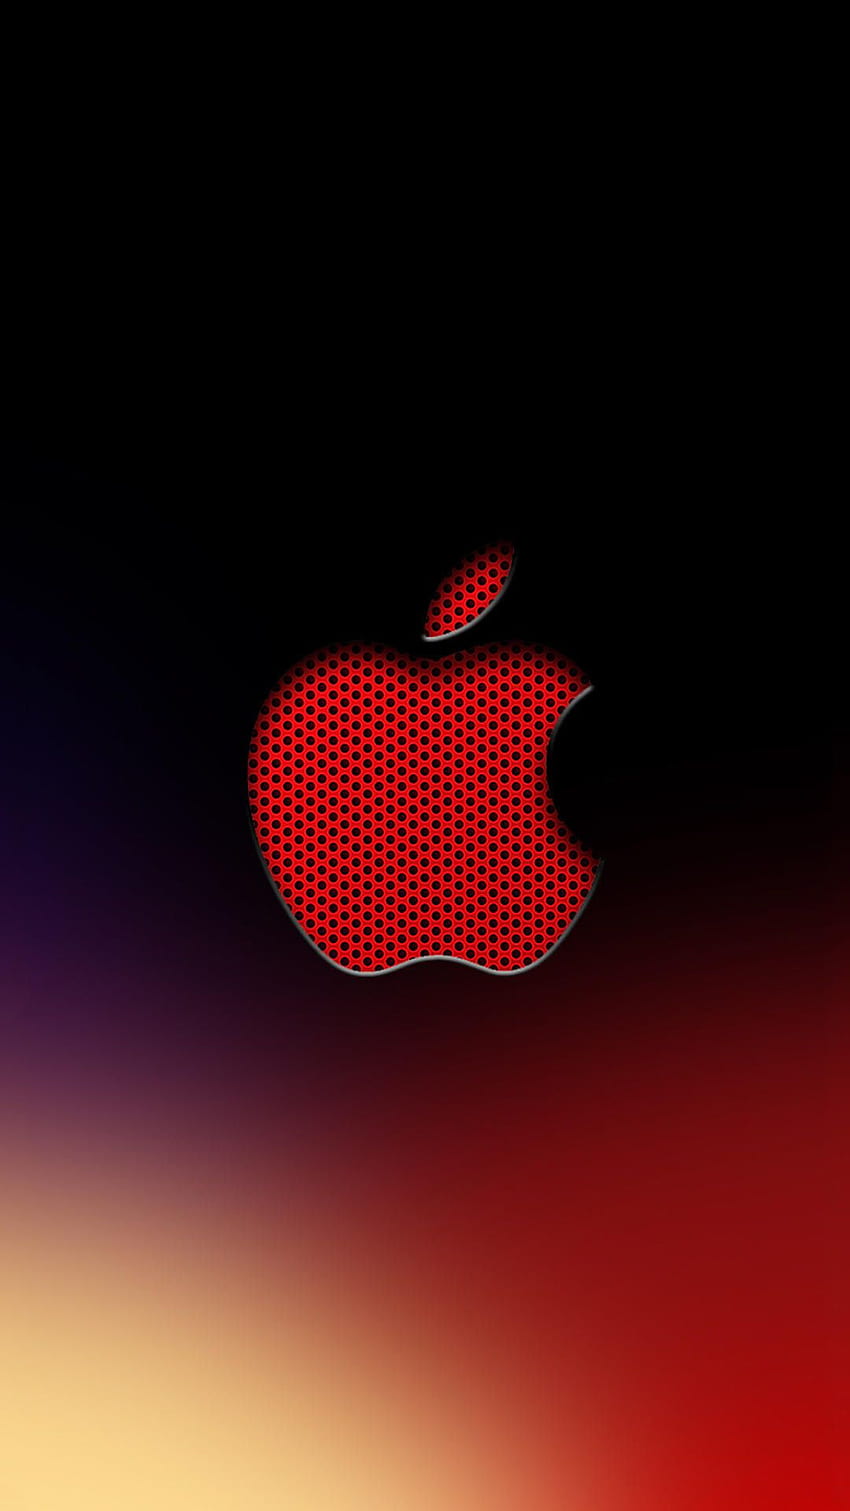 iPhone 7 Plus, Merah dan Hitam wallpaper ponsel HD